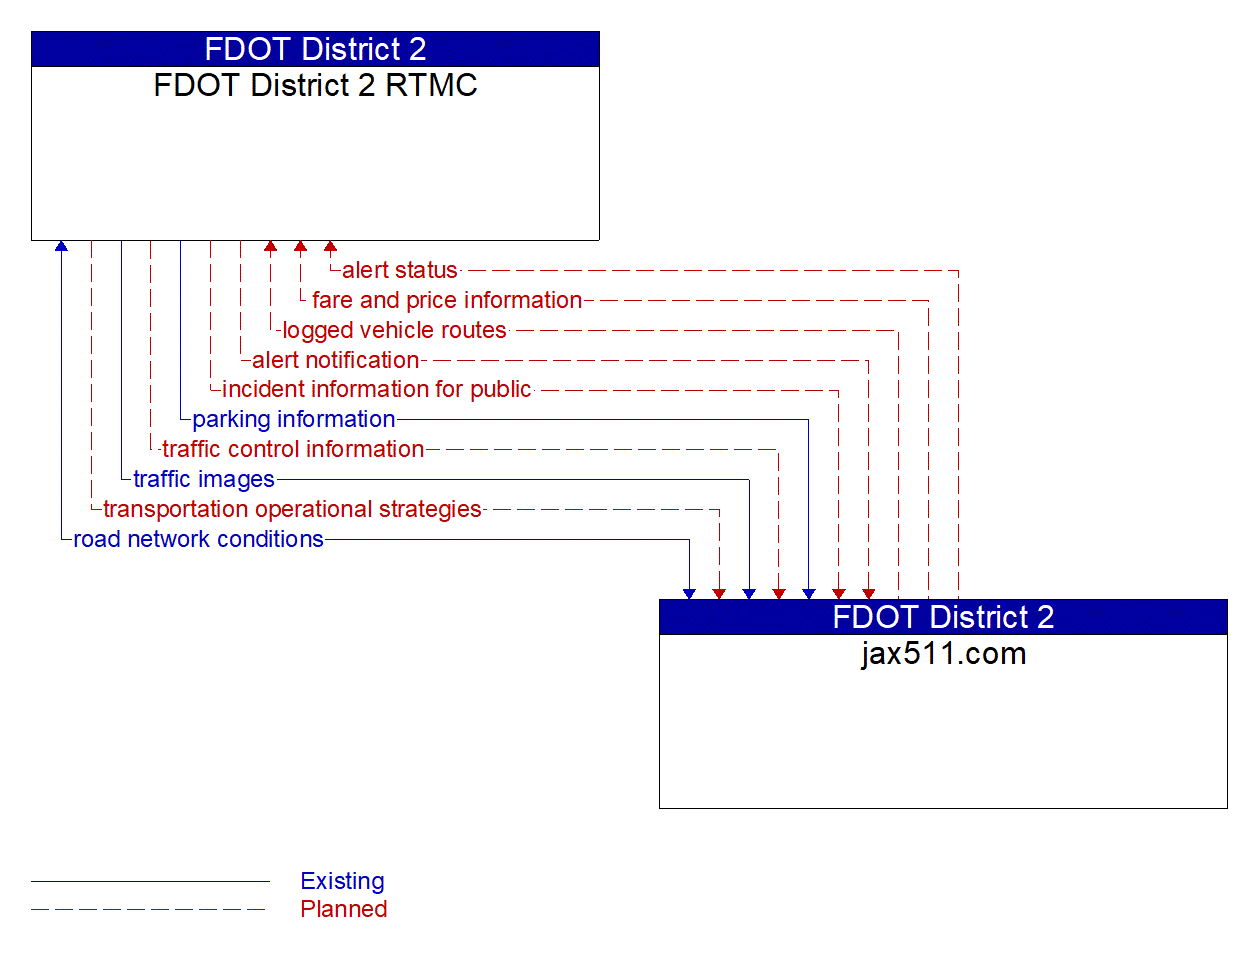 Architecture Flow Diagram: jax511.com <--> FDOT District 2 RTMC